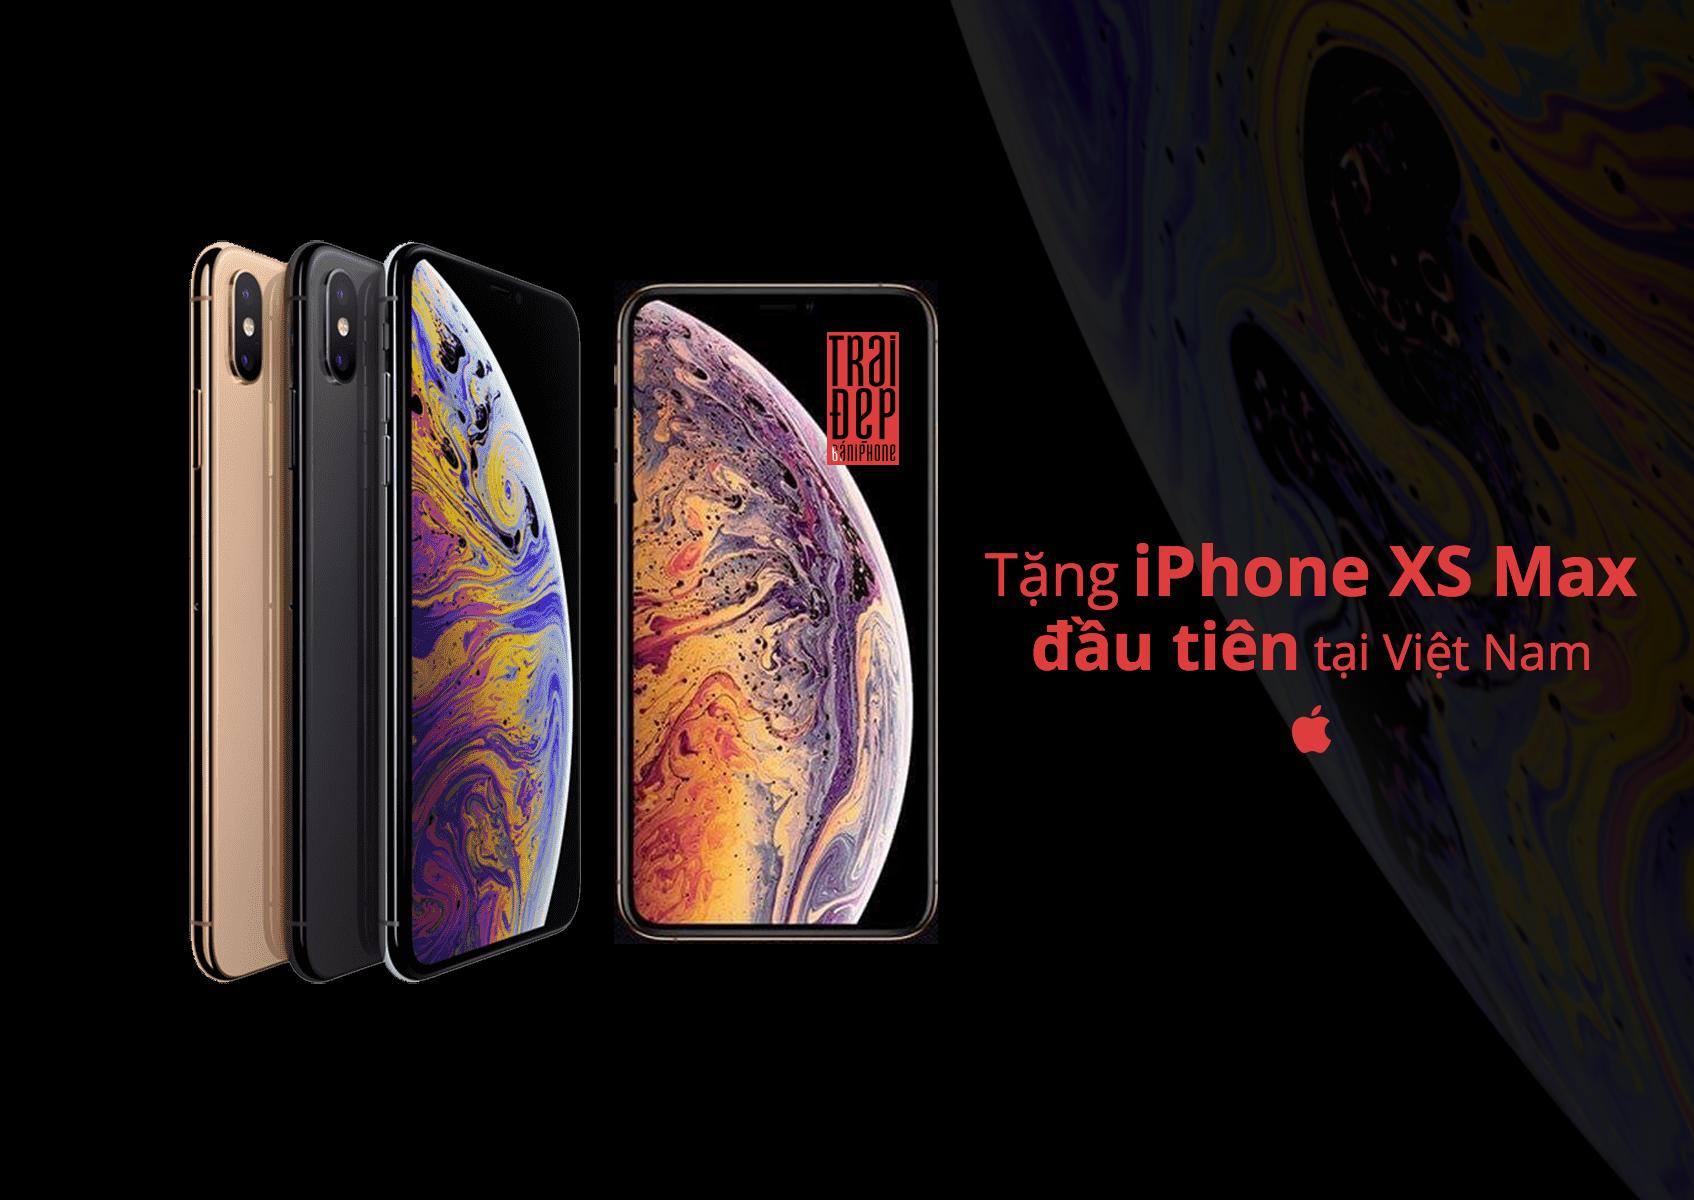 [QC] - TẶNG iPhone Xs Max đầu tiên tại Việt Nam